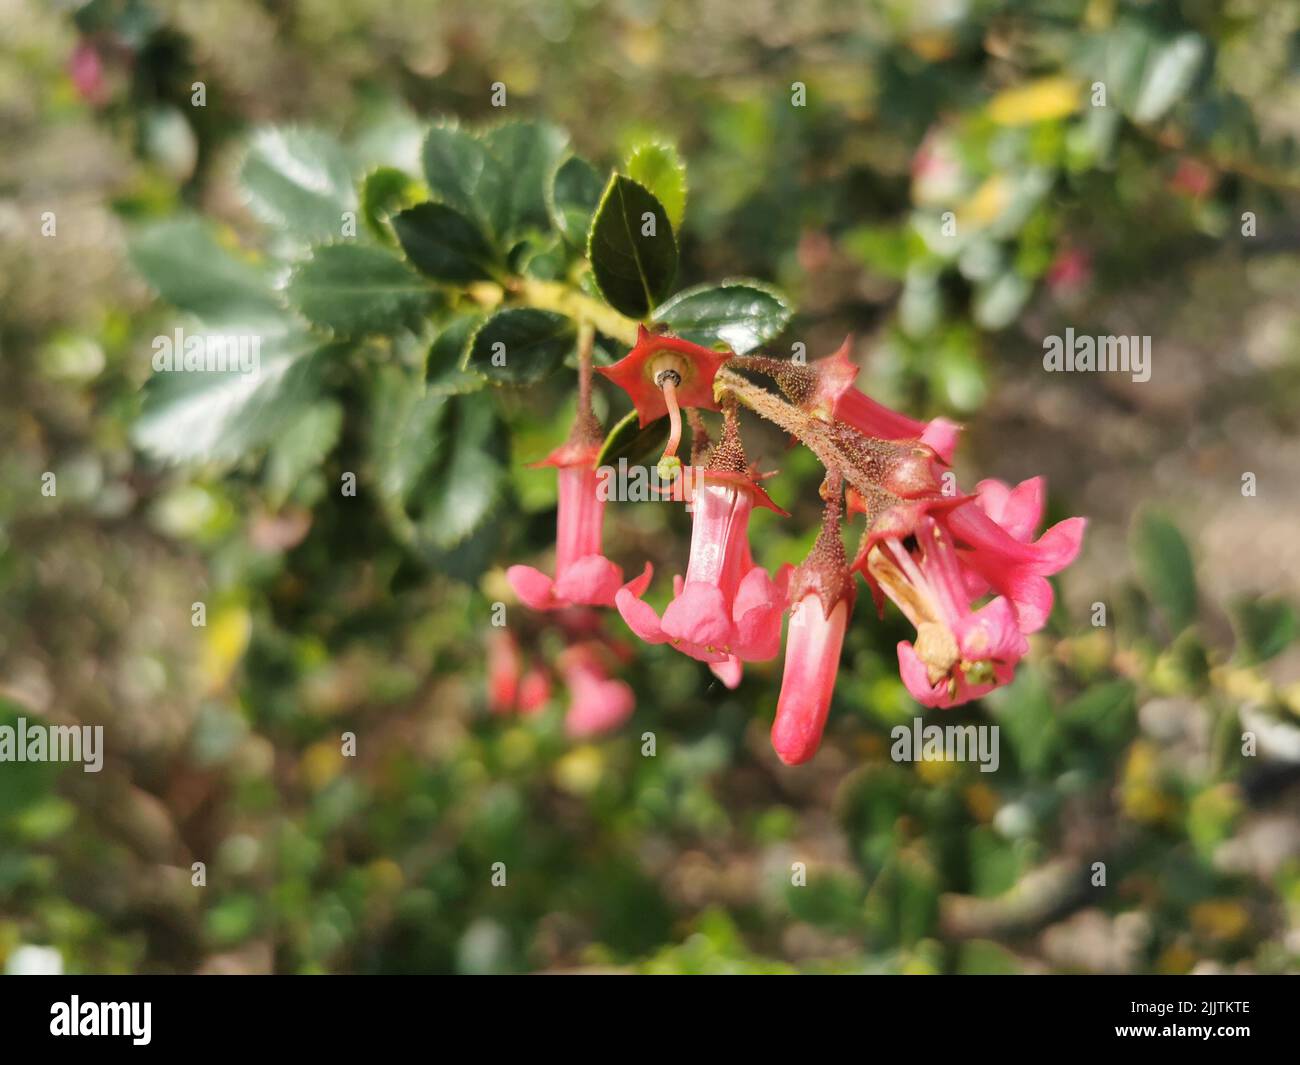 A closeup of growing Red Escallonia (Escallonia rubra) flowers in a garden Stock Photo